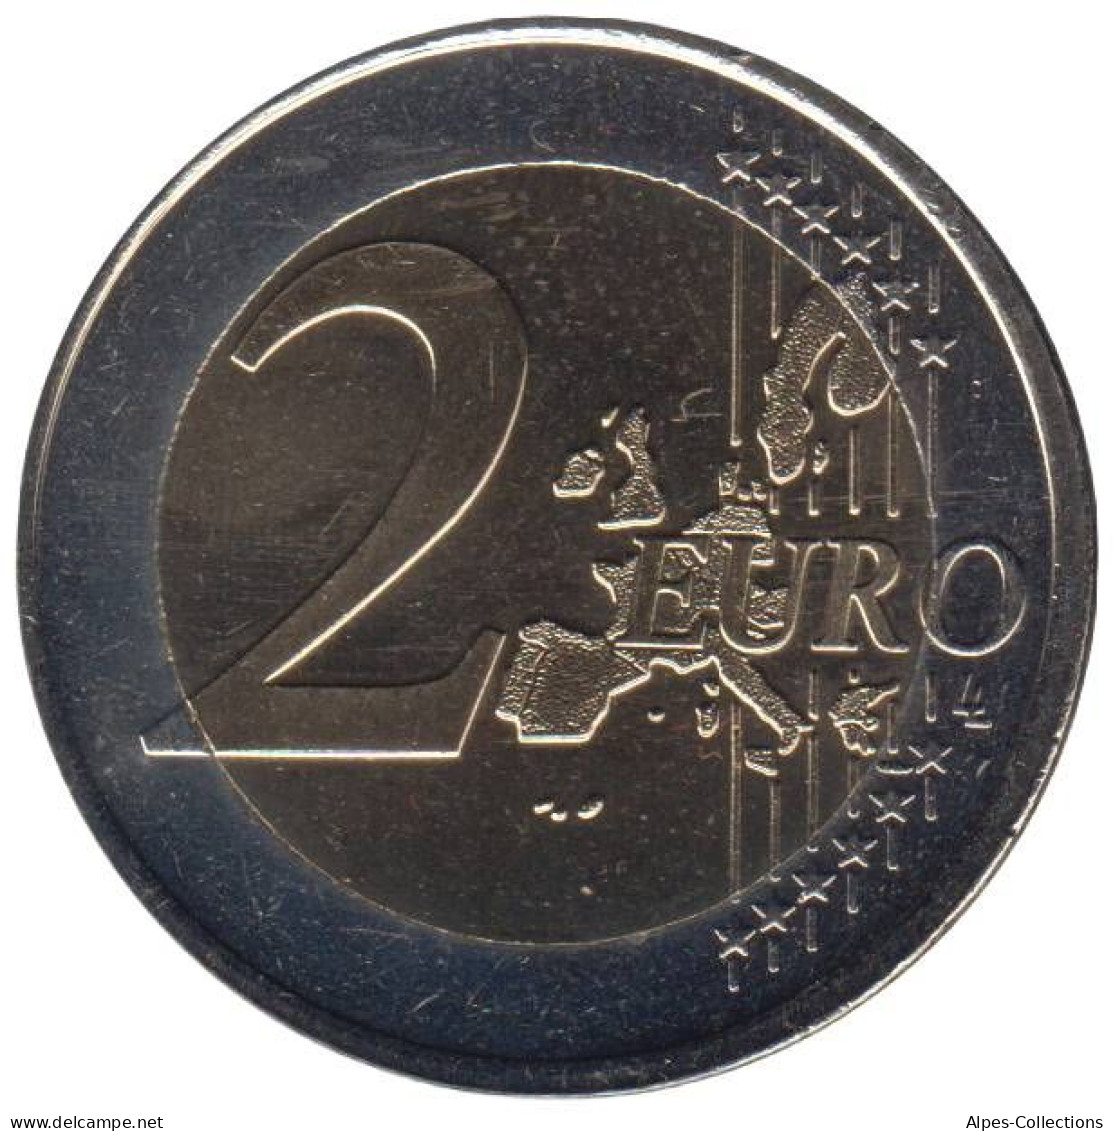 PB20001.1 - PAYS-BAS - 2 Euros - 2001 - Pays-Bas